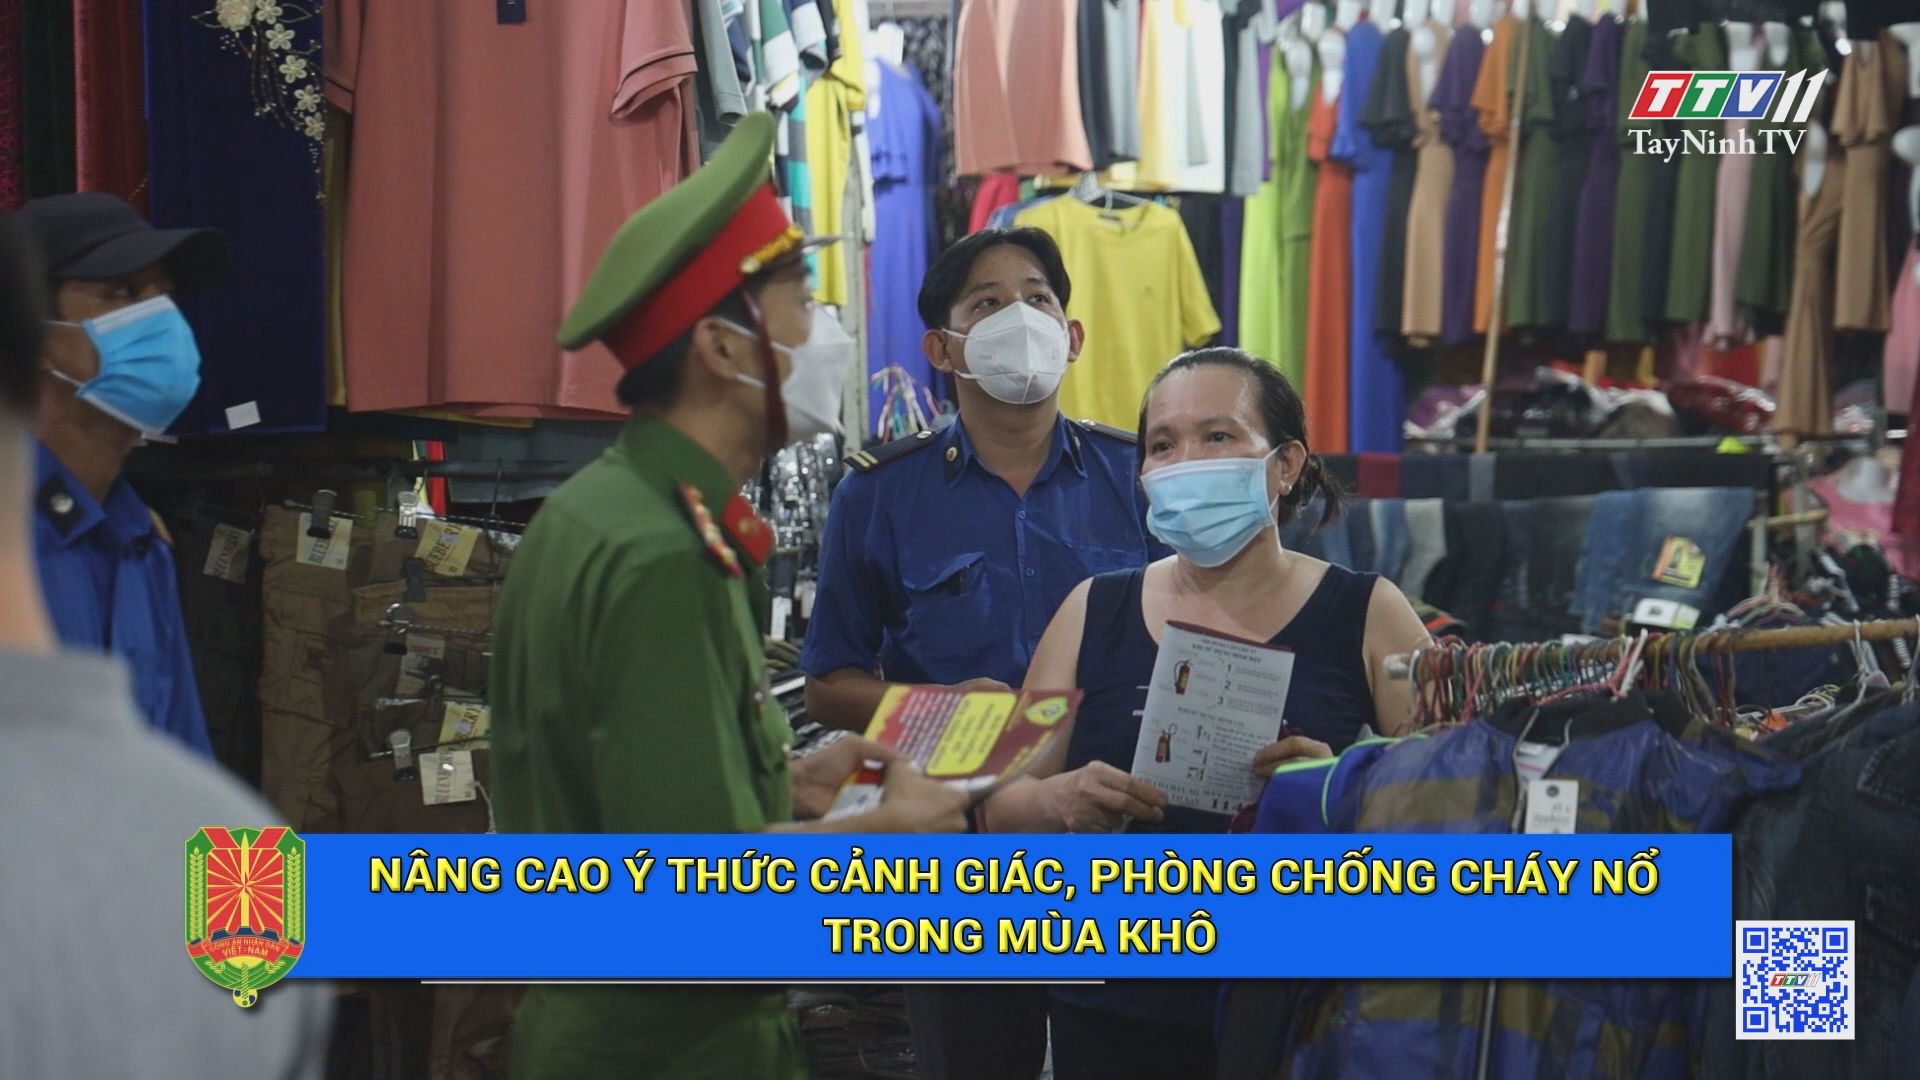 Nâng cao ý thức cảnh giác, phòng chống cháy nổ trong mùa khô | AN NINH TÂY NINH | TayNinhTV